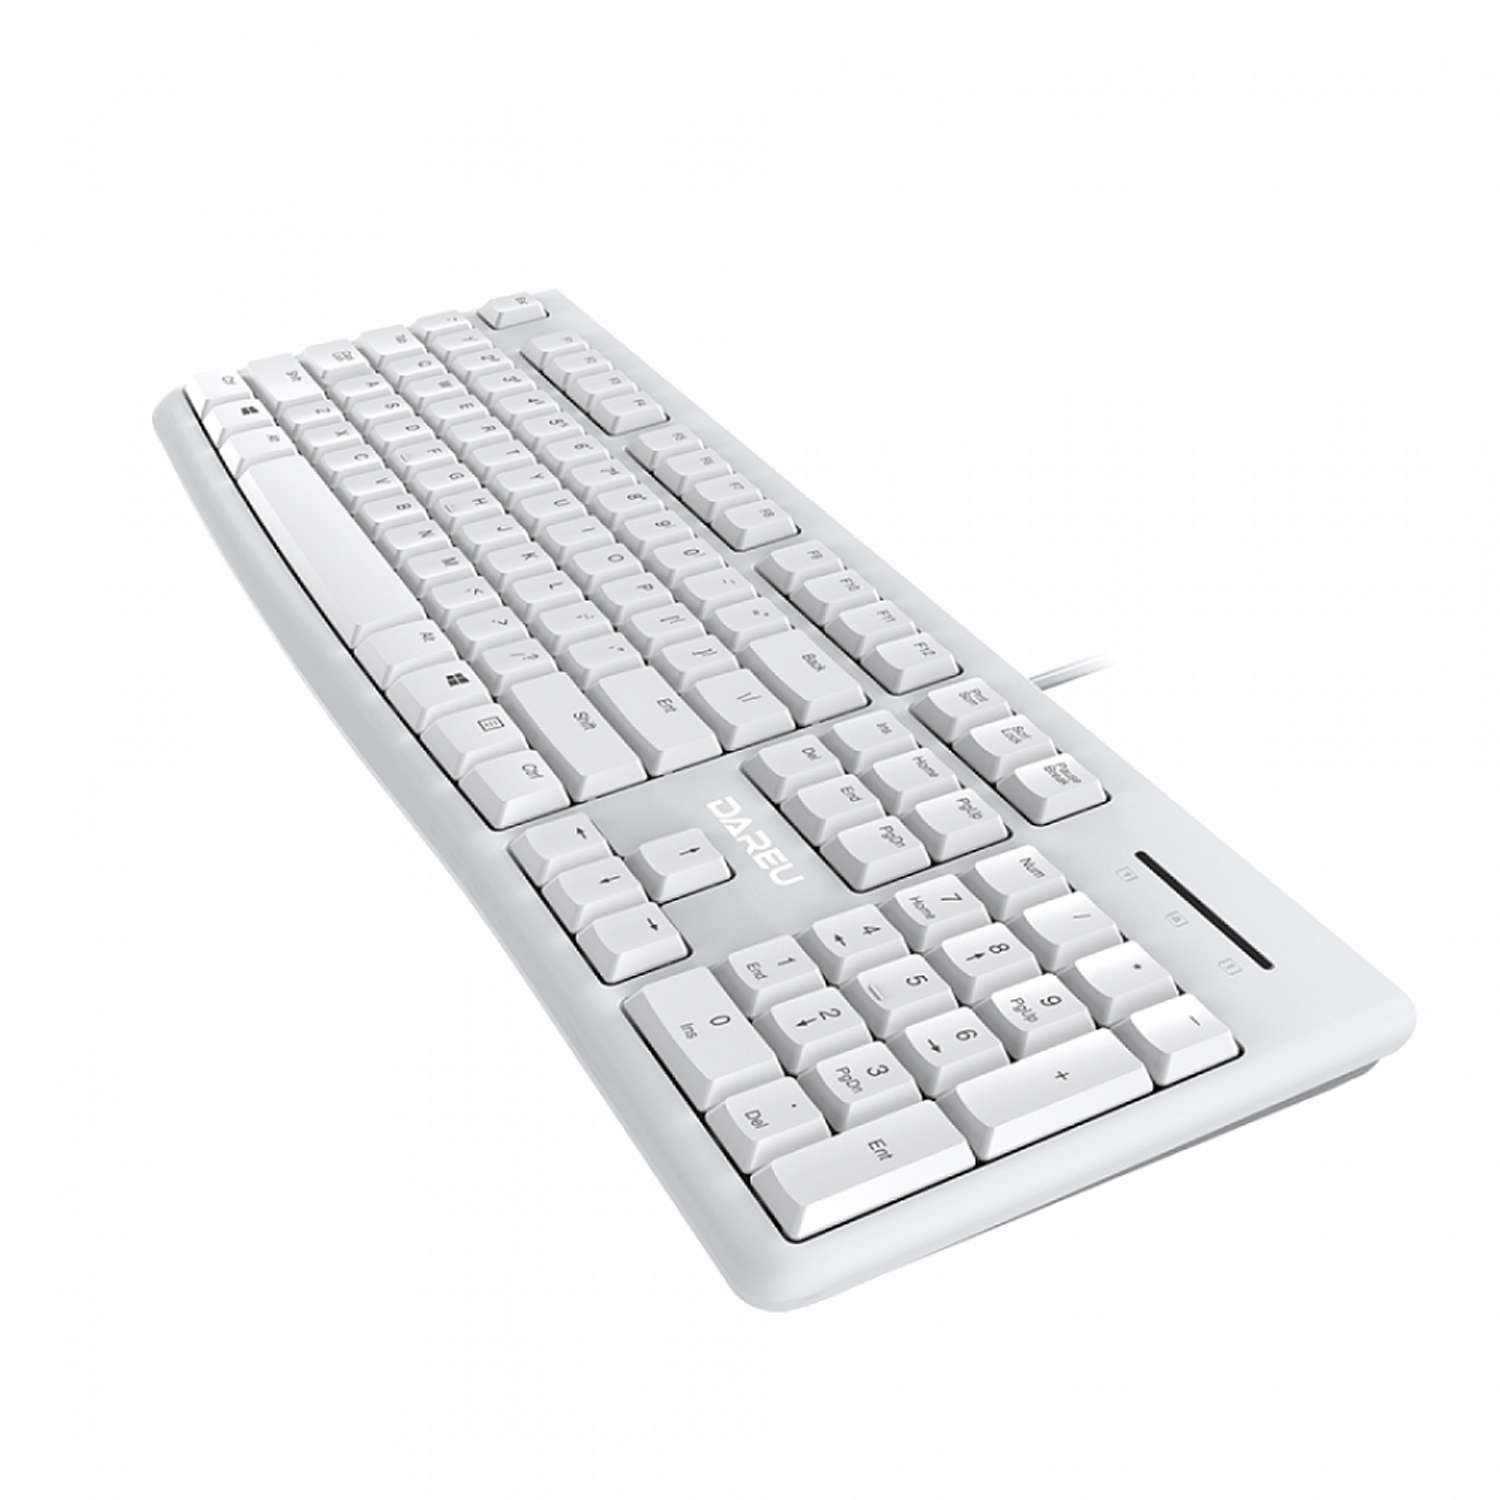 Клавиатура и мышь проводные Dareu MK185 - фото 6